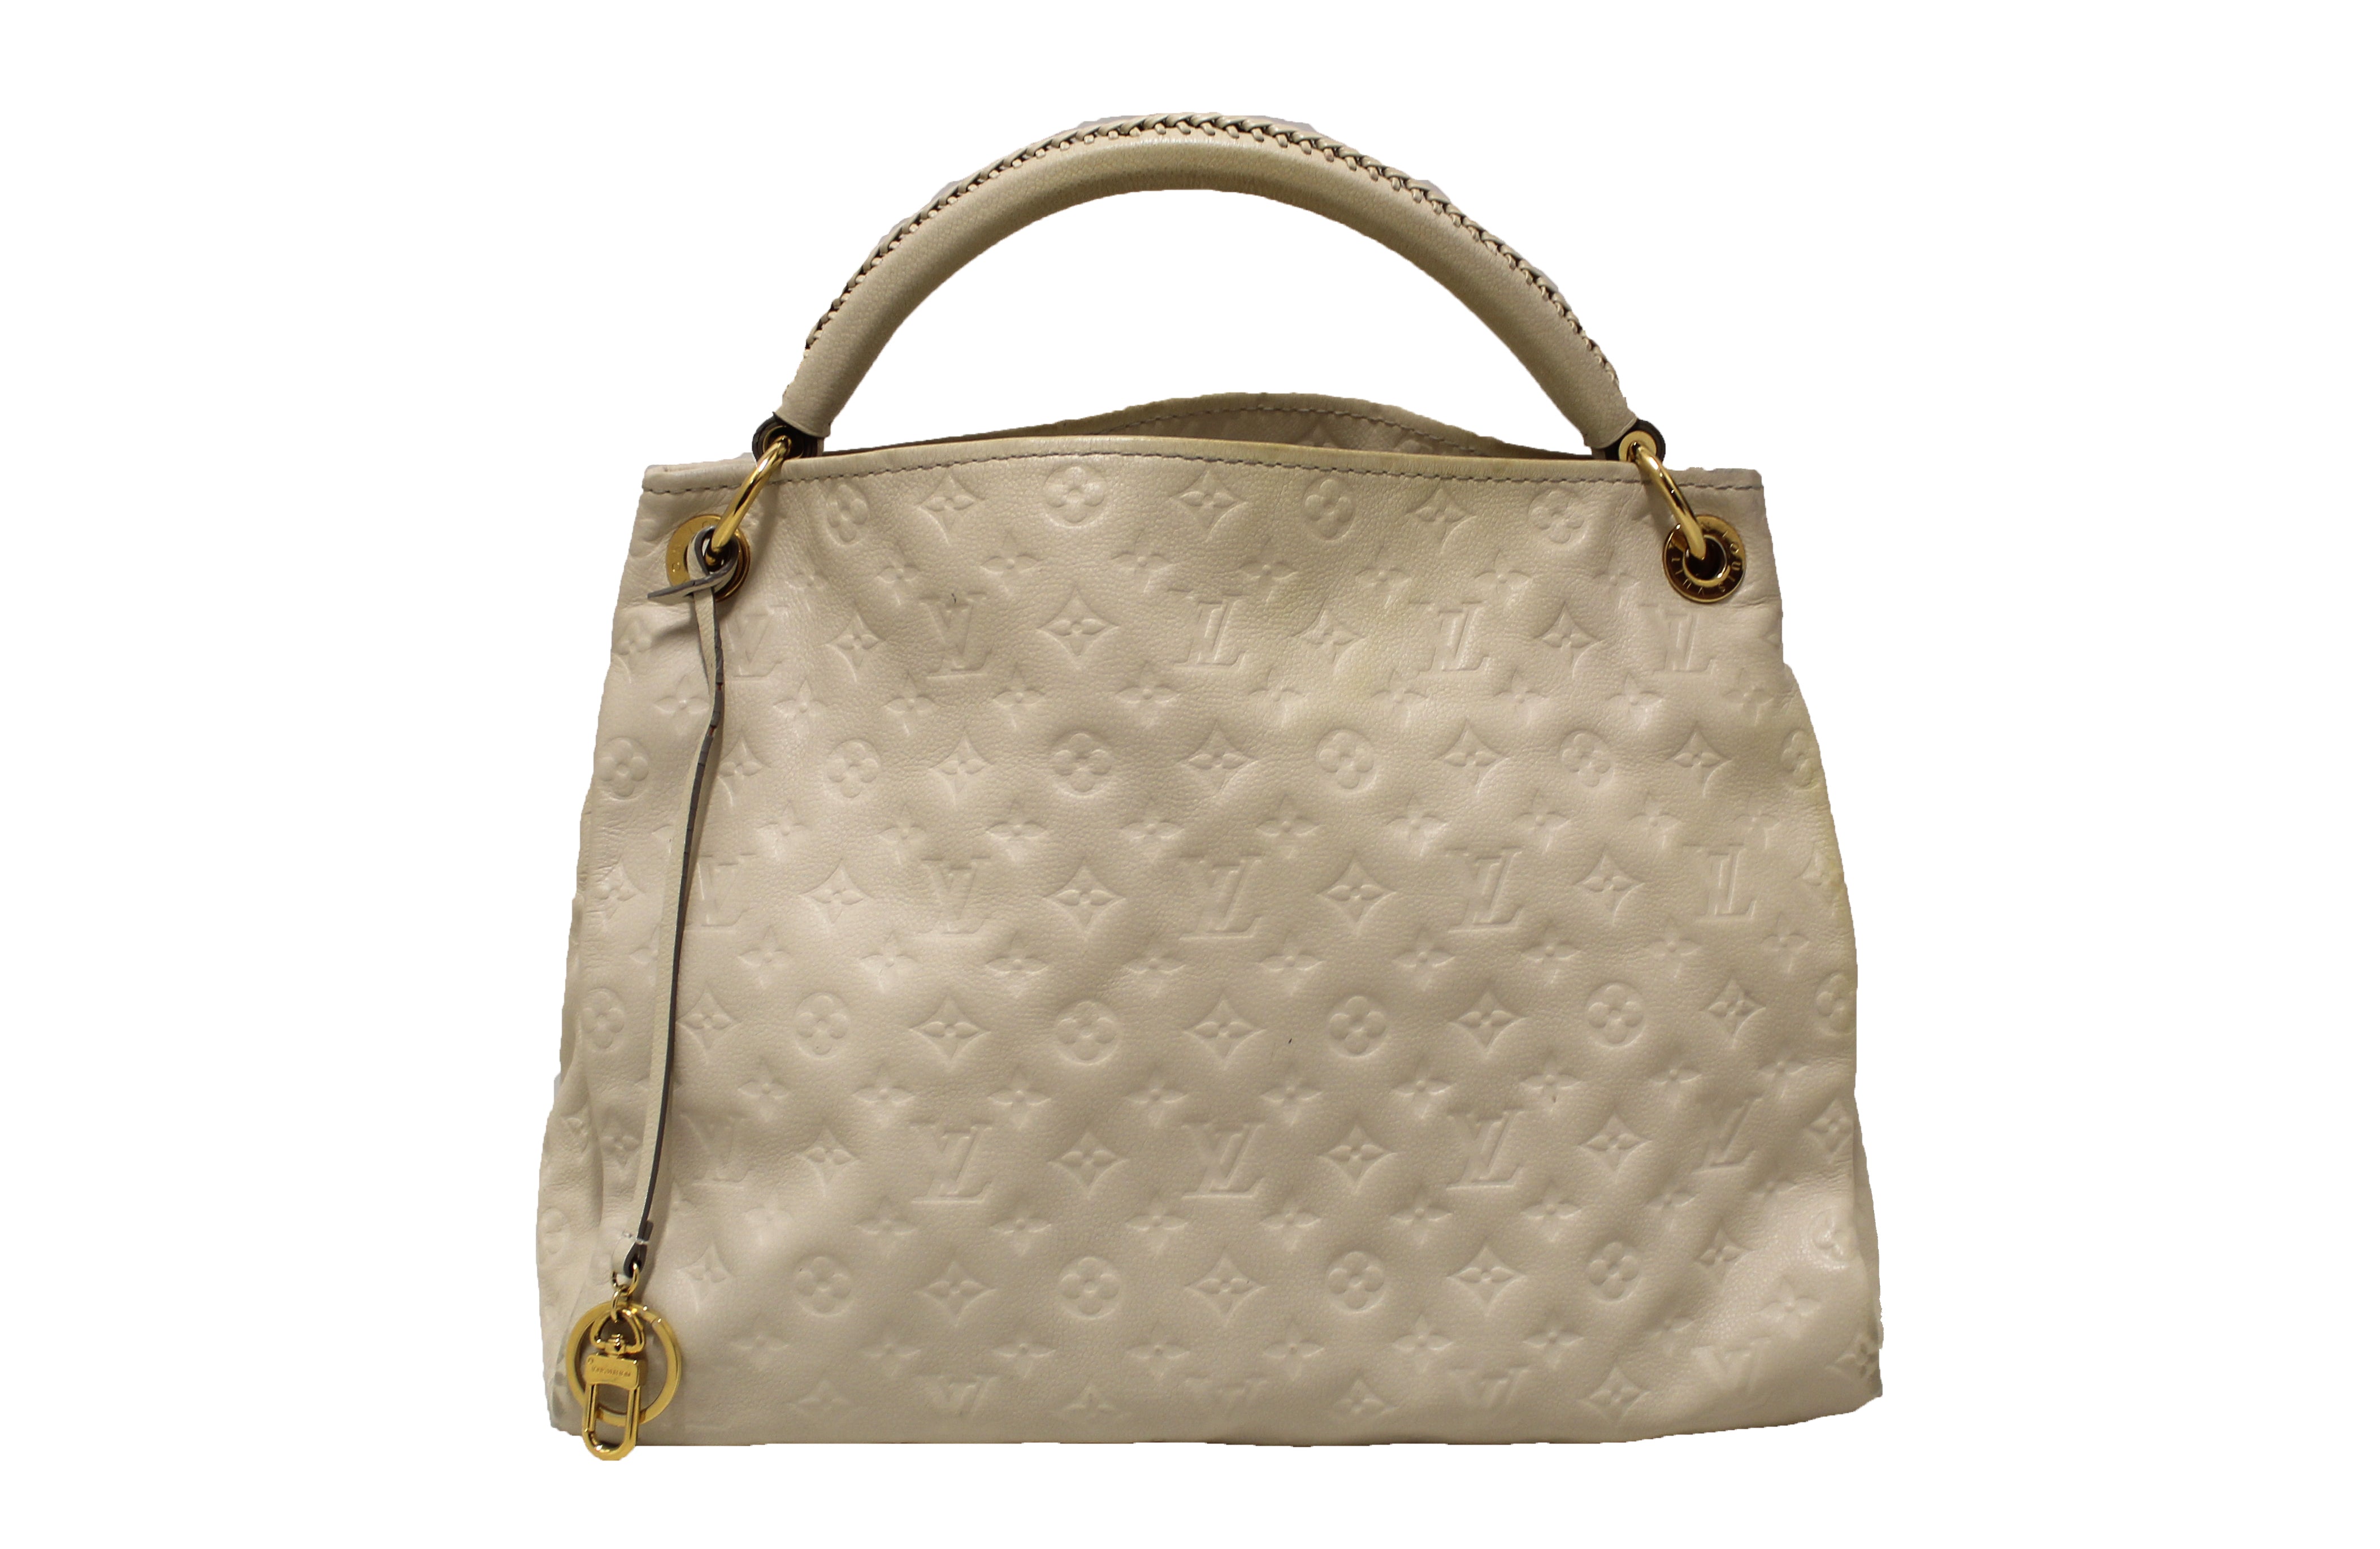 Authentic Louis Vuitton Beige Empreinte Leather Artsy MM Shoulder Tote Bag